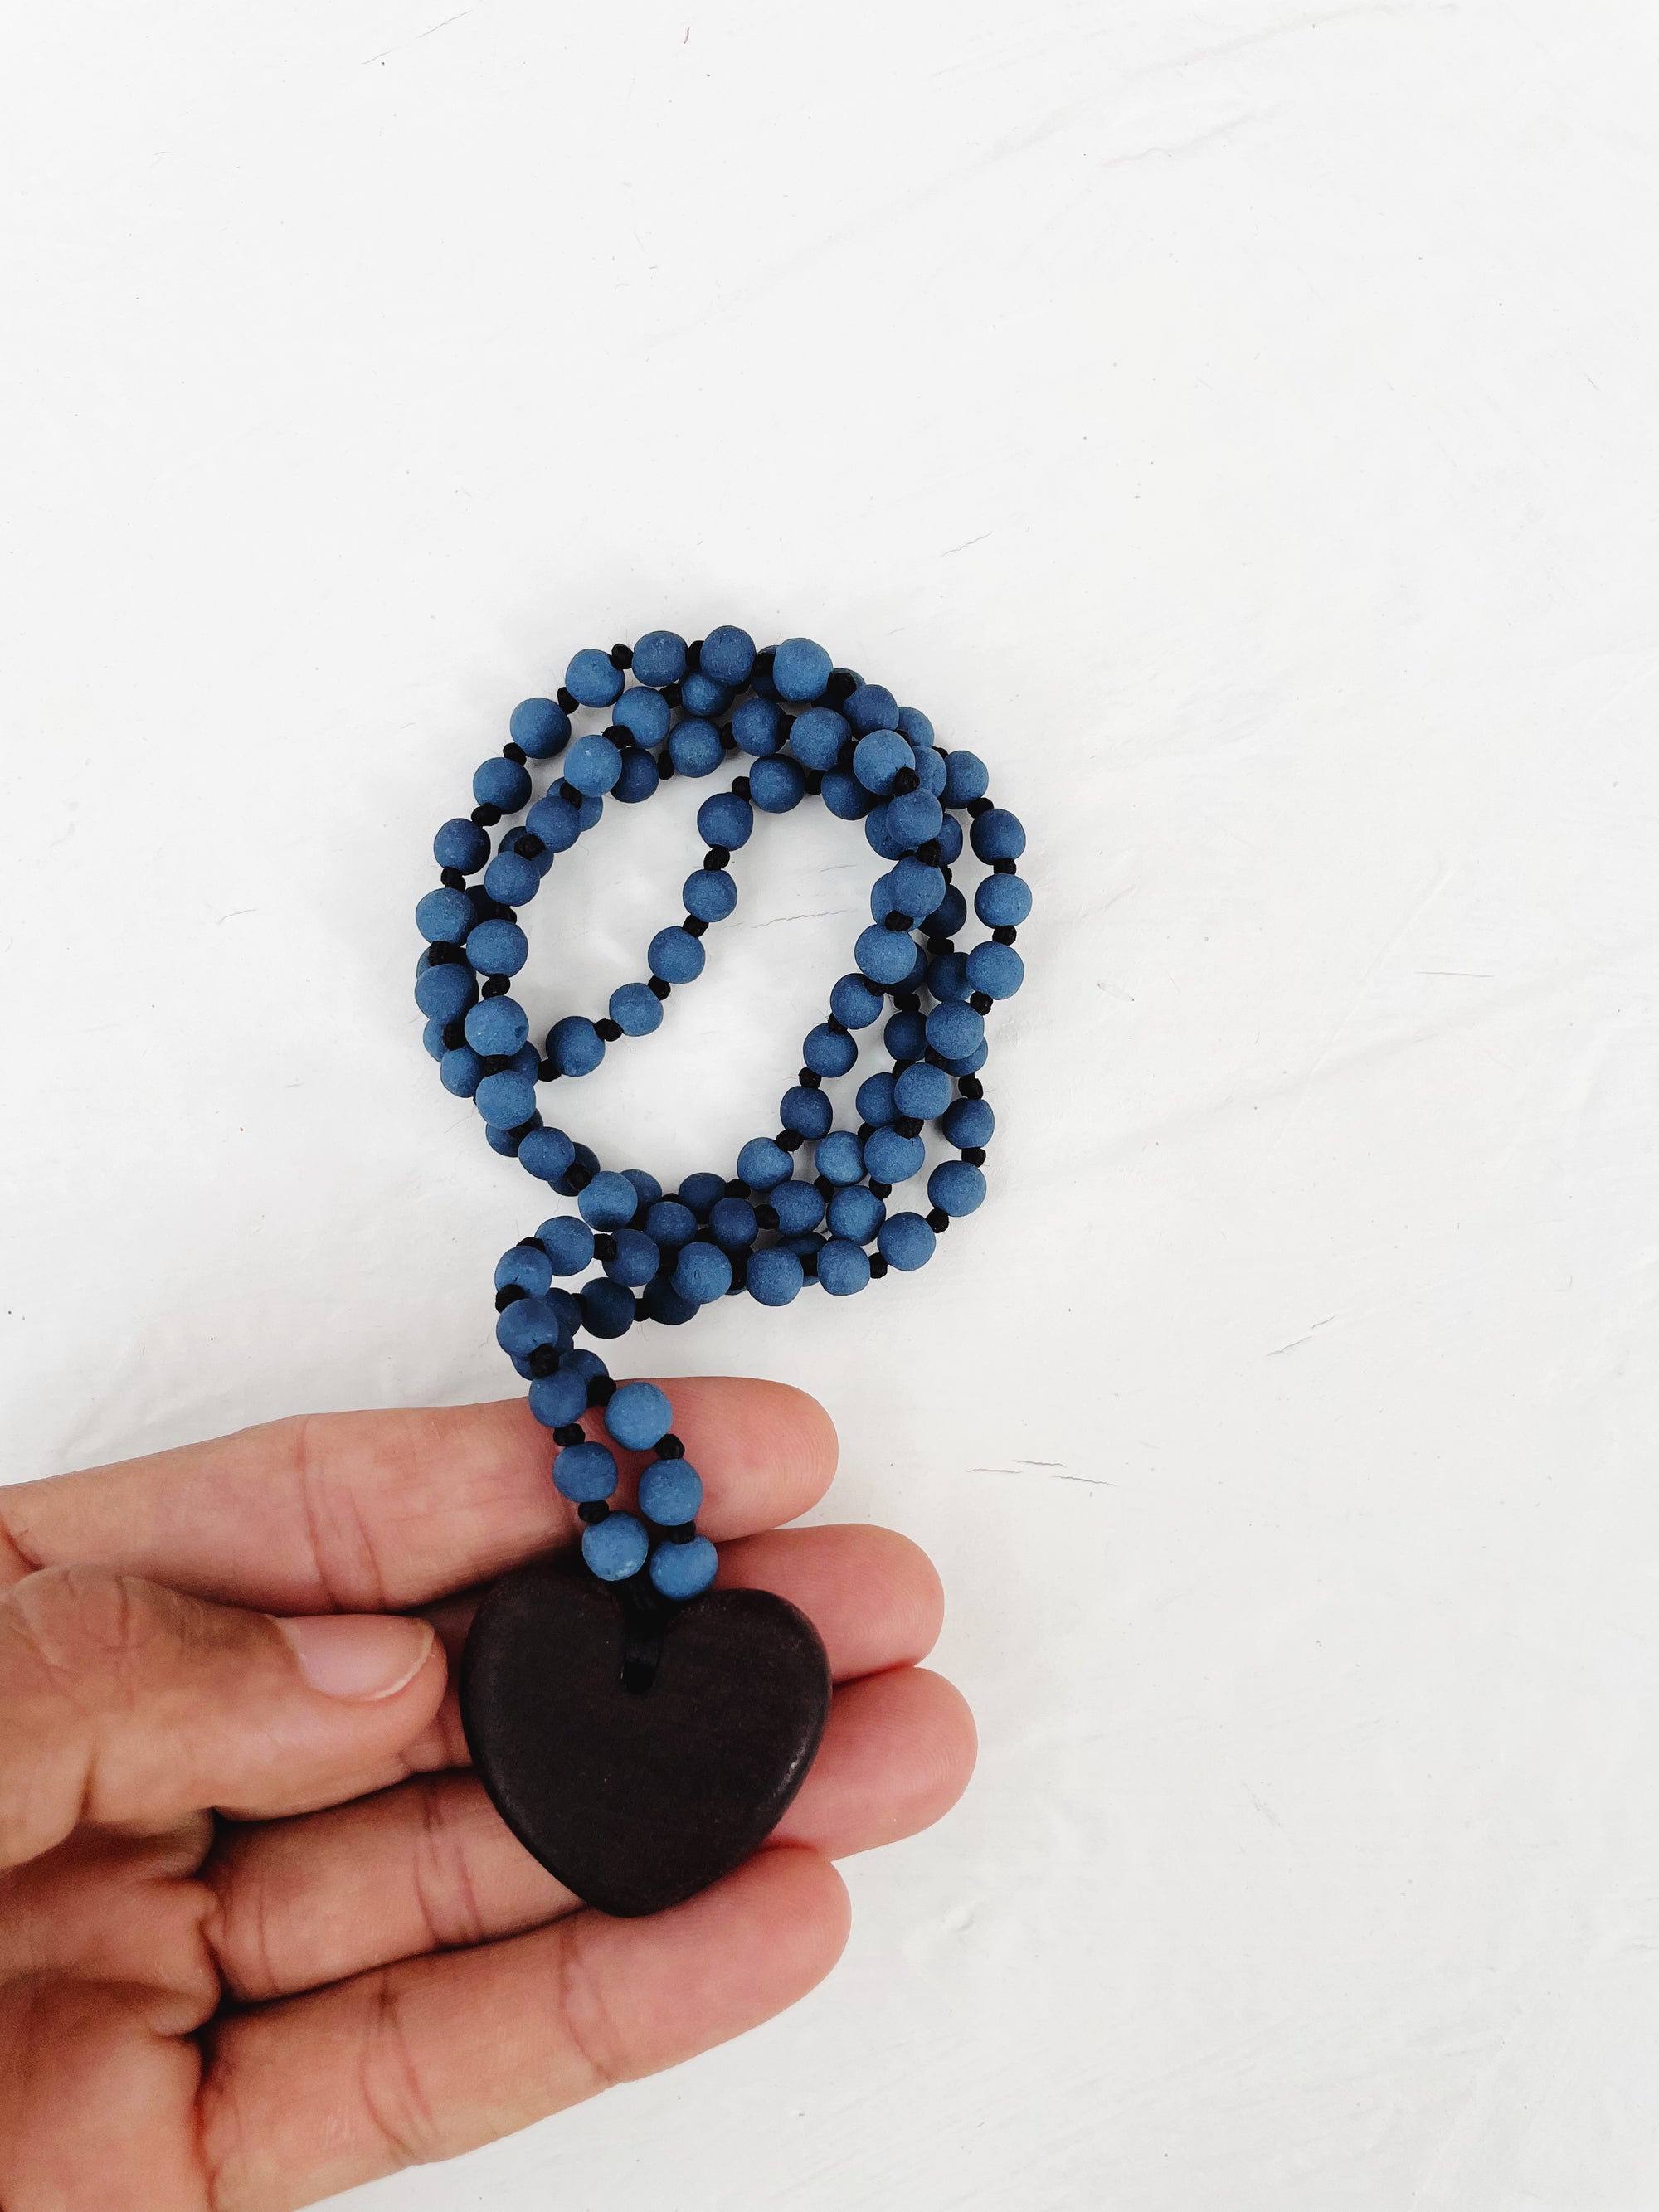 Mahogany Heart Necklace - Regular and Mini